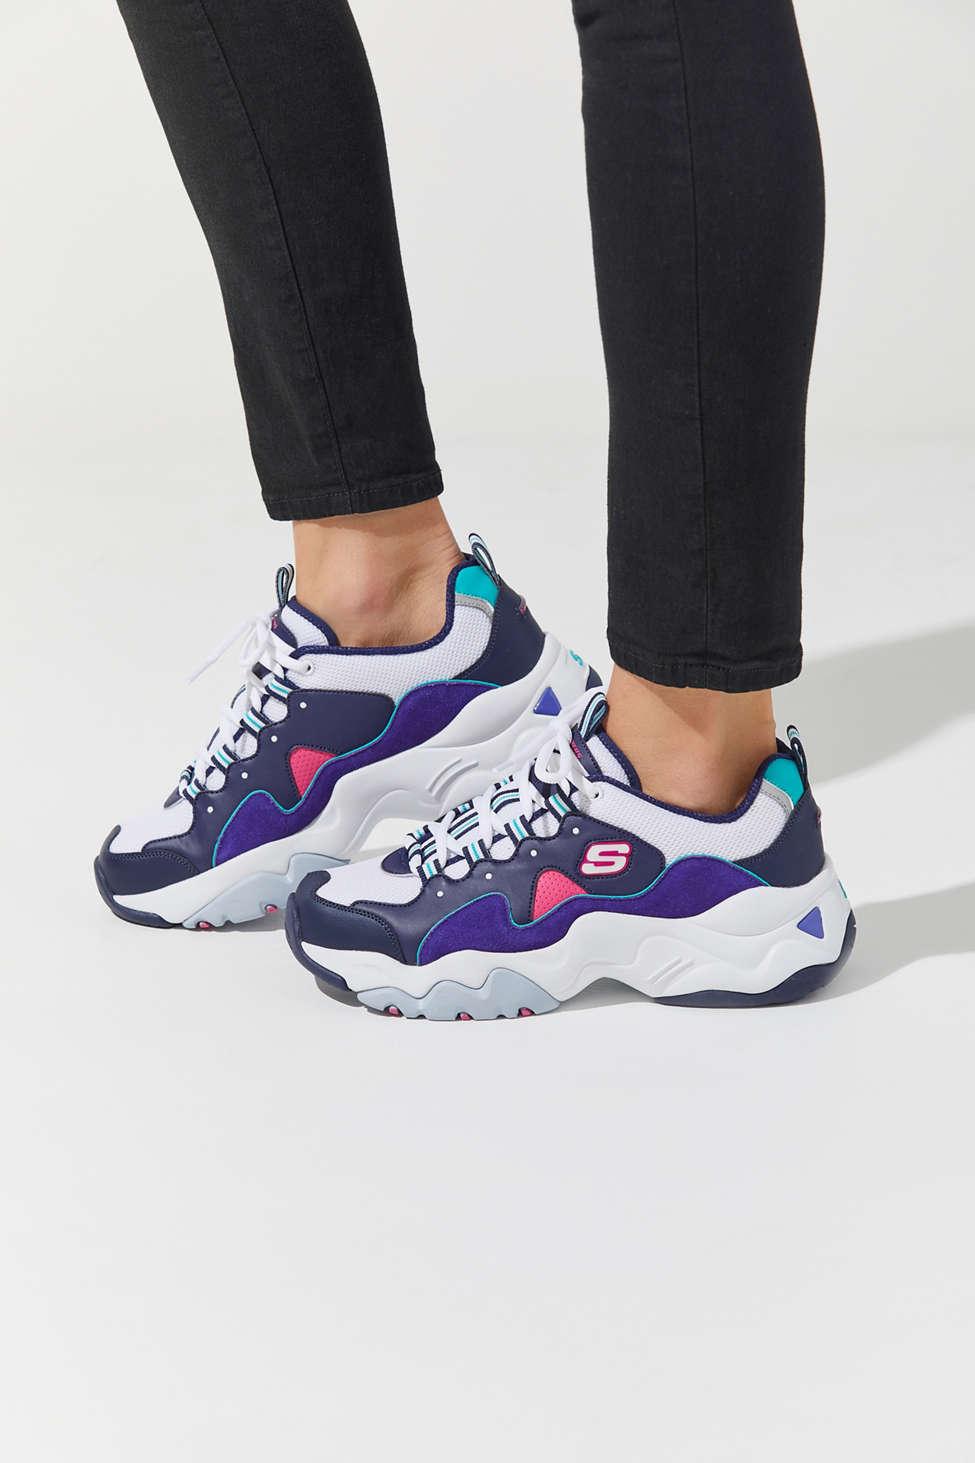 Skechers D'lites 3 Zenway Women's Sneaker in Purple | Lyst